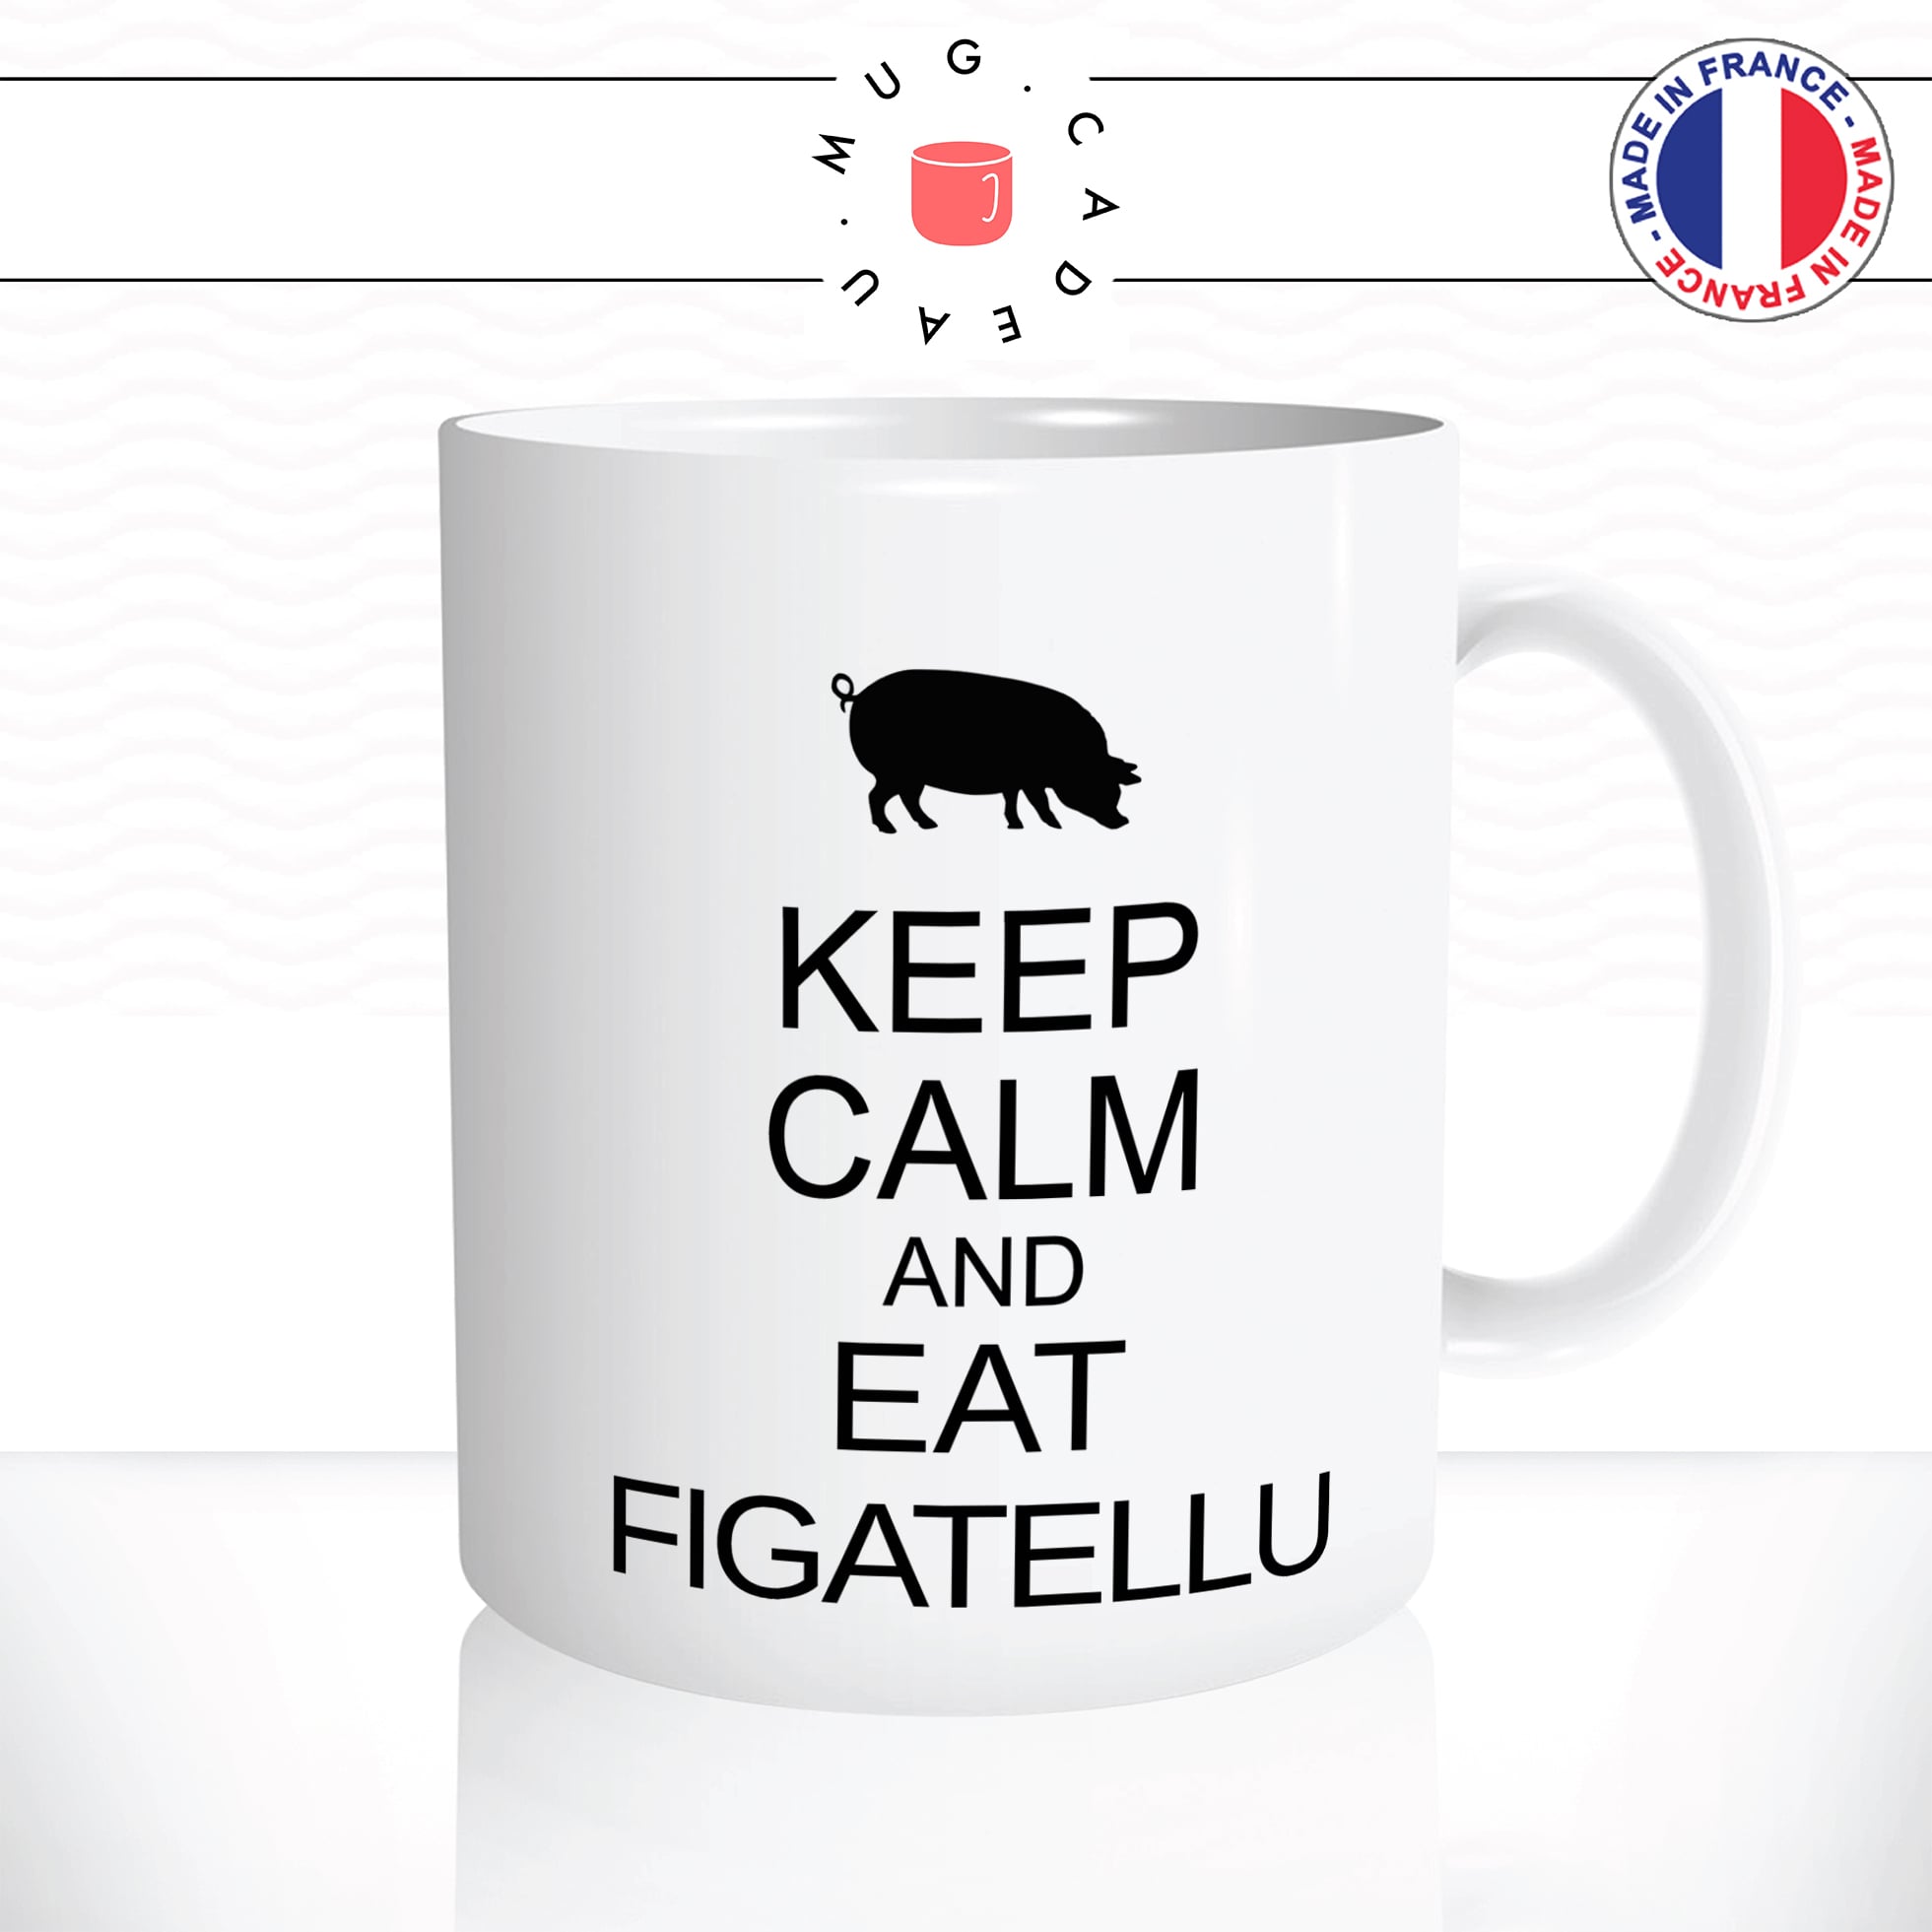 mug-tasse-keep-calm-eat-figatellu-cochon-charcuterie-corse-corsica-barbecue-idée-cadeau-original-fun-café-thé-tasse-personnalisée2-min